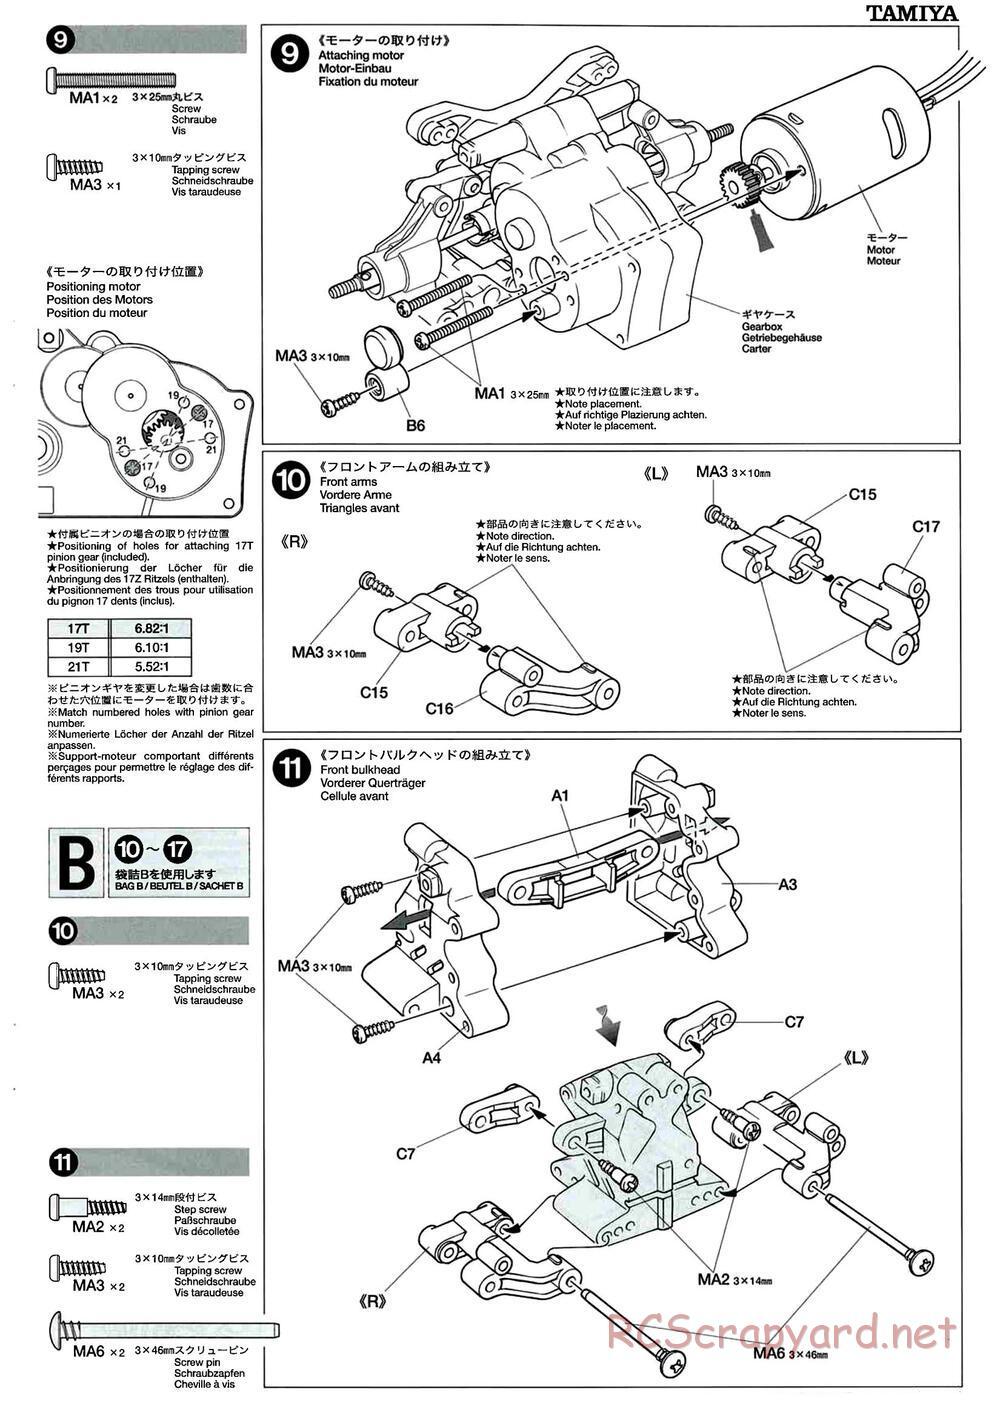 Tamiya - M-04L Chassis - Manual - Page 7